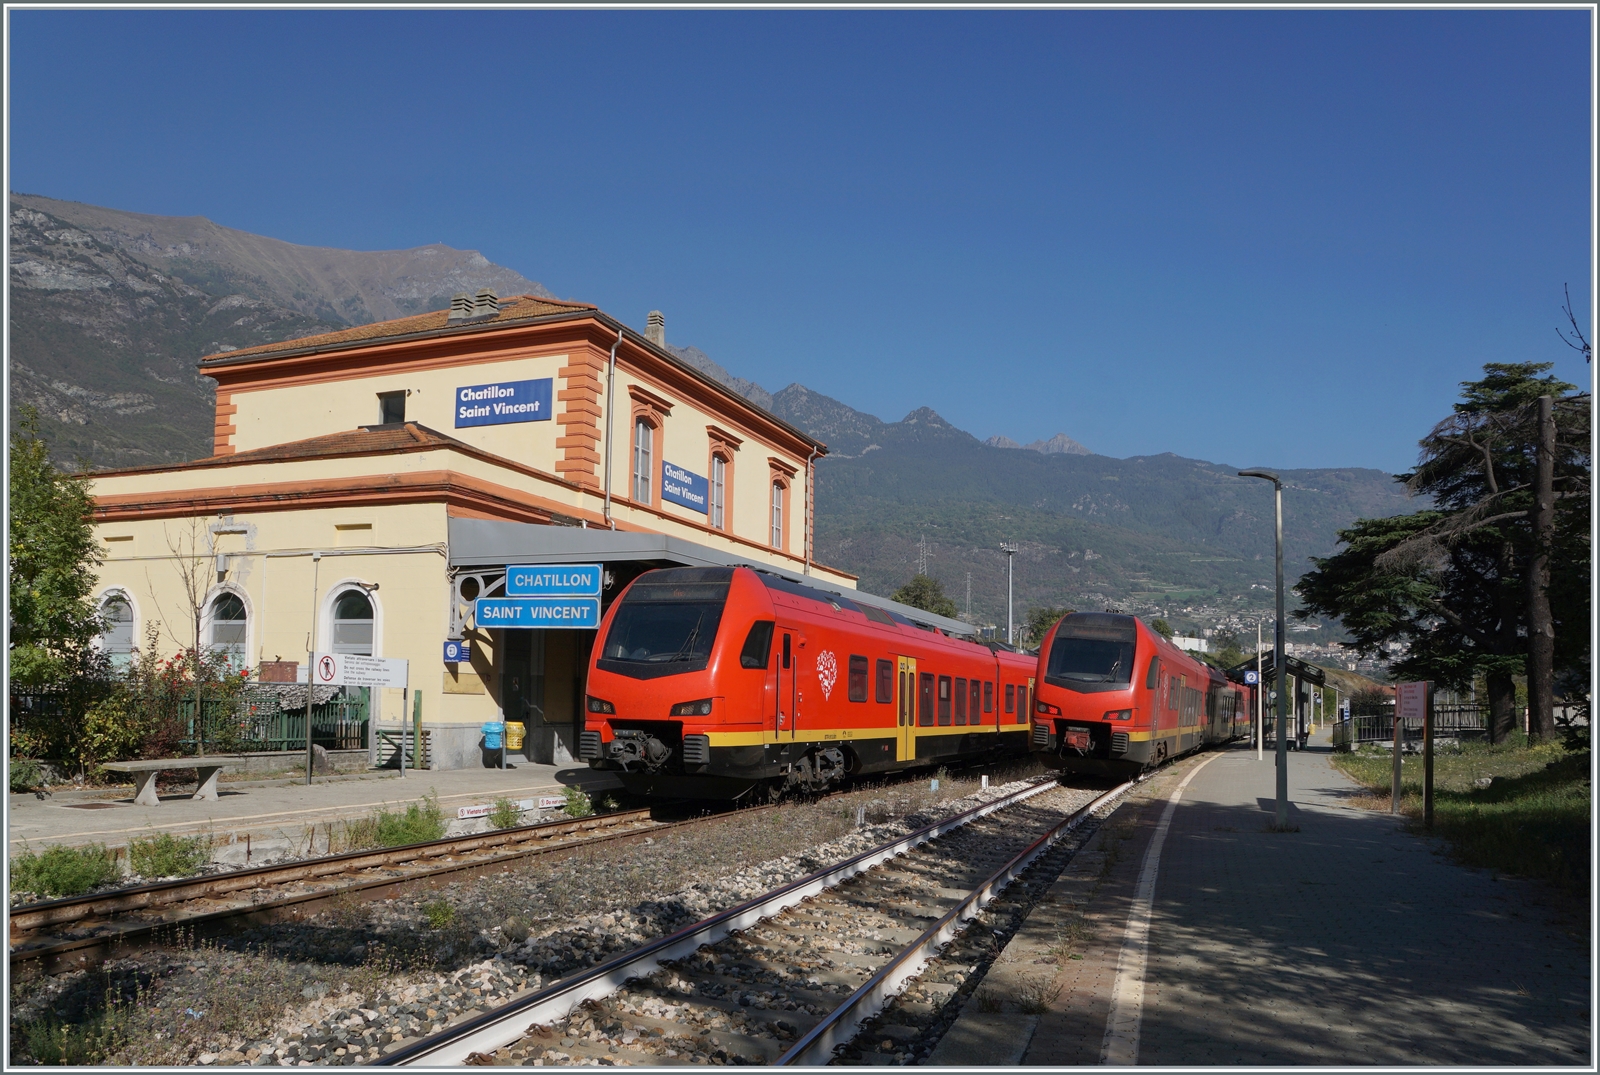 In Chatillon Saint Vincent kreuzen sich die beiden bimodulare FS Trenitalia BUM BTR 813 004 von Aosta nach Torino und BUM BTR 813 001 der Gegenrichtung.

11. Oktober 2023